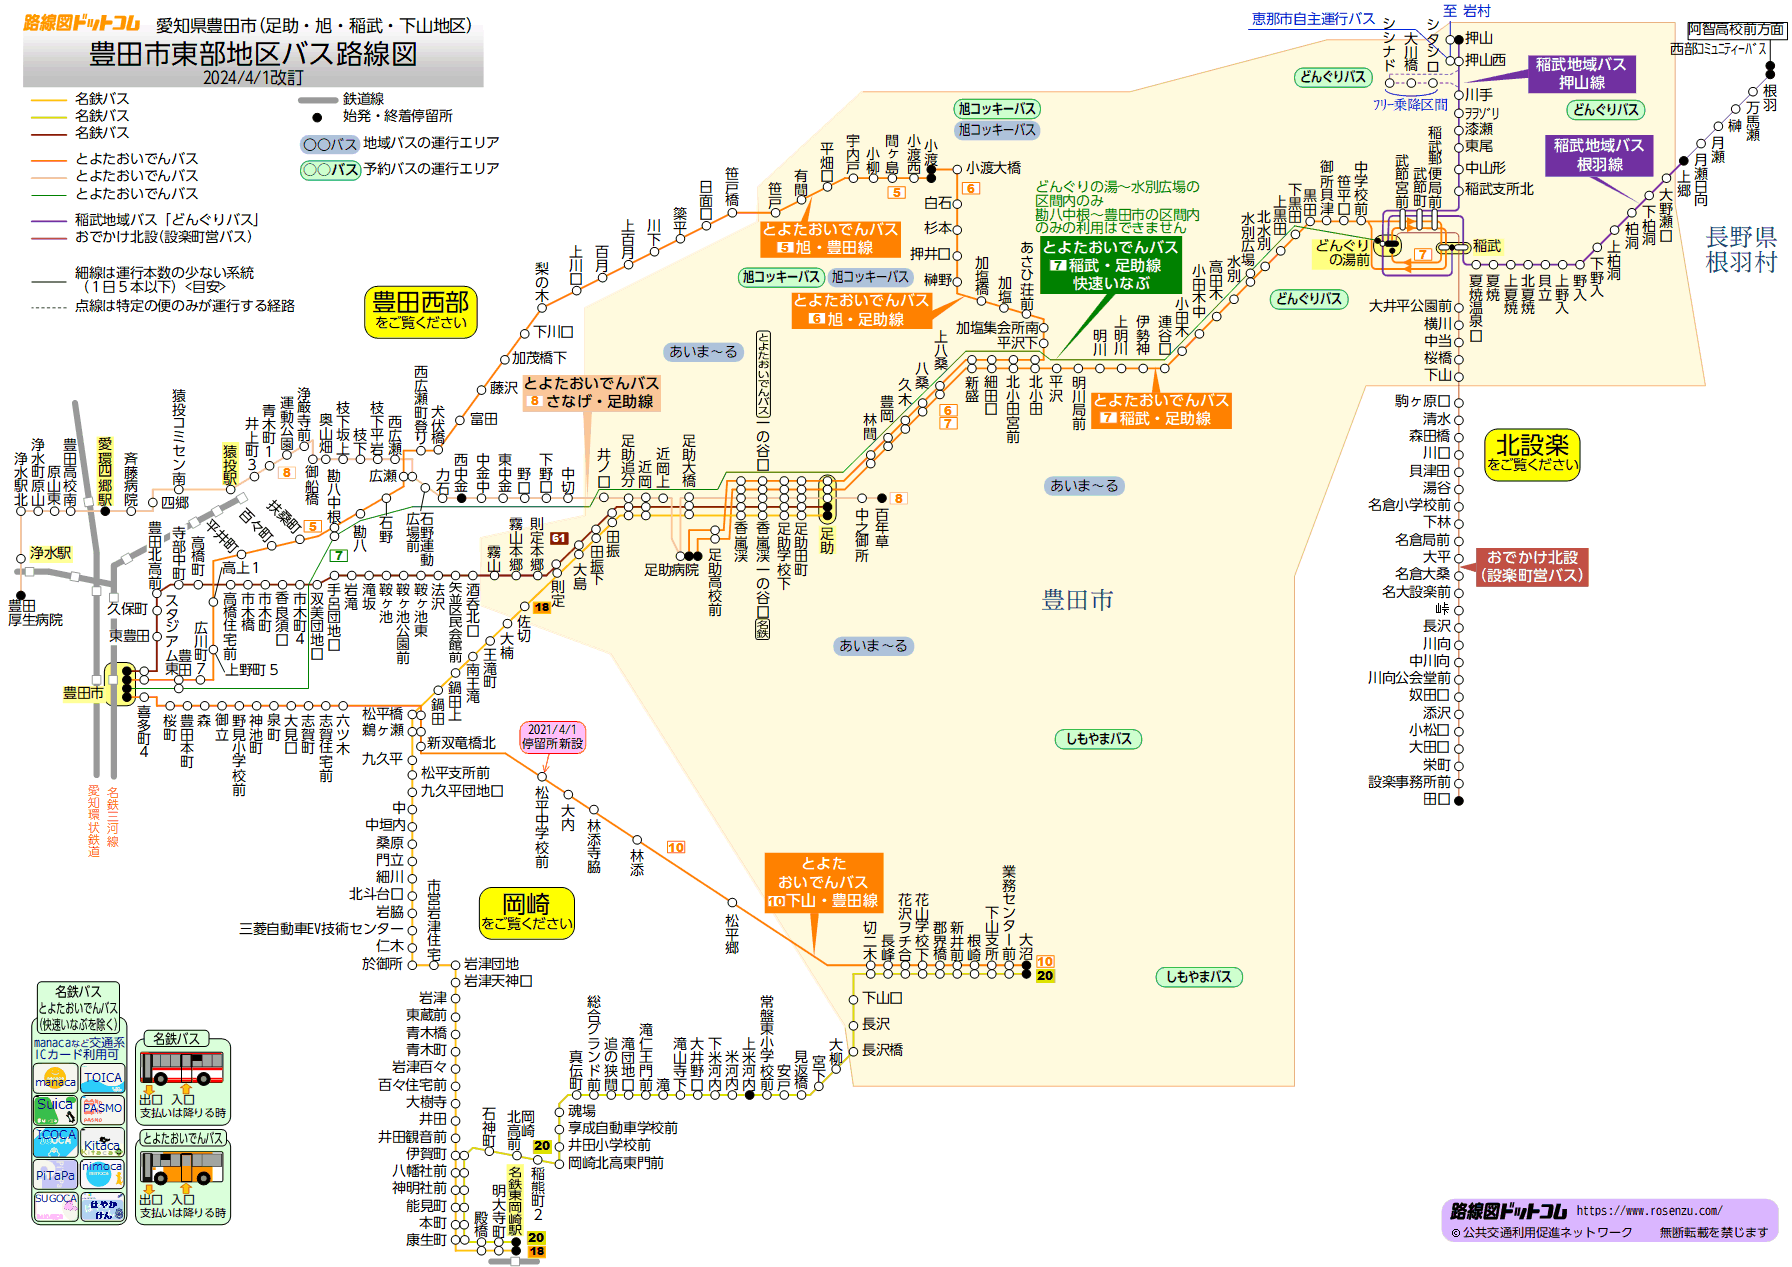 路線図ドットコム 愛知県 豊田市東部地区バス路線図